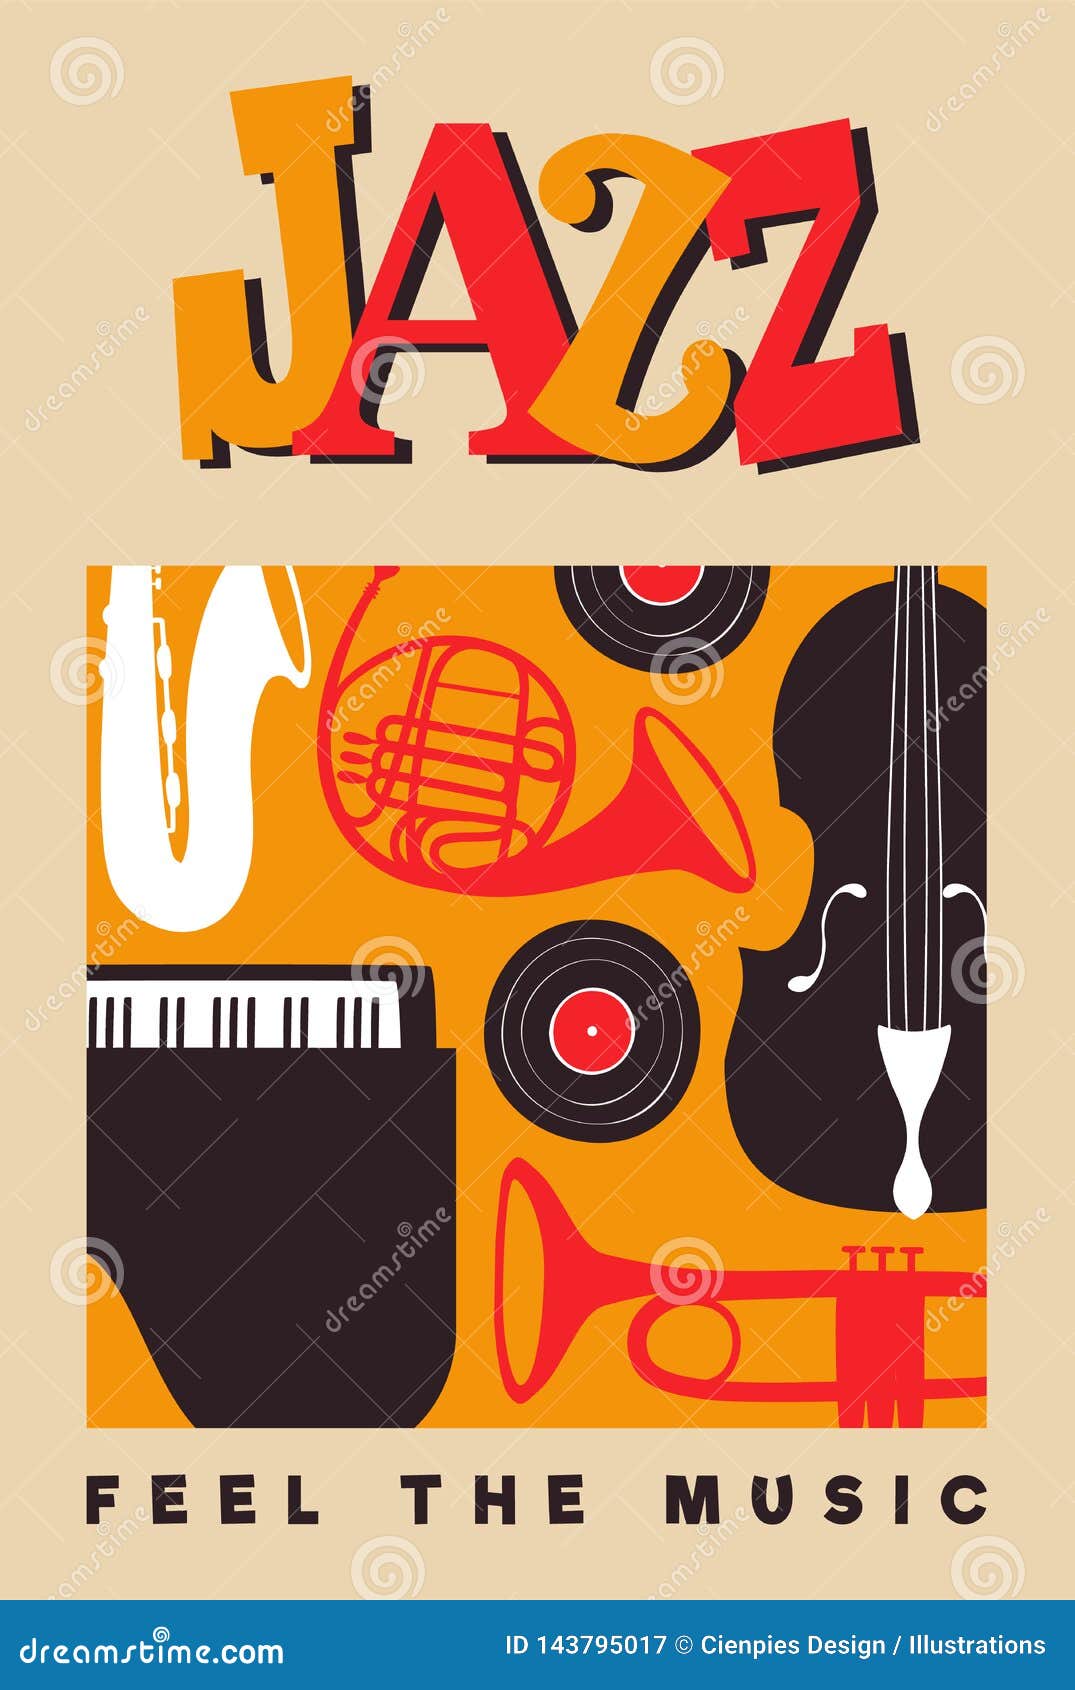 Jazz Day - ngày hội Jazz đang đến gần và poster Jazz Day đang rất được mong đợi. Nếu bạn còn ngại ngần đến các buổi biểu diễn jazz, hãy xem hình ảnh poster Jazz Day này để cảm nhận được sức hút của âm nhạc này.